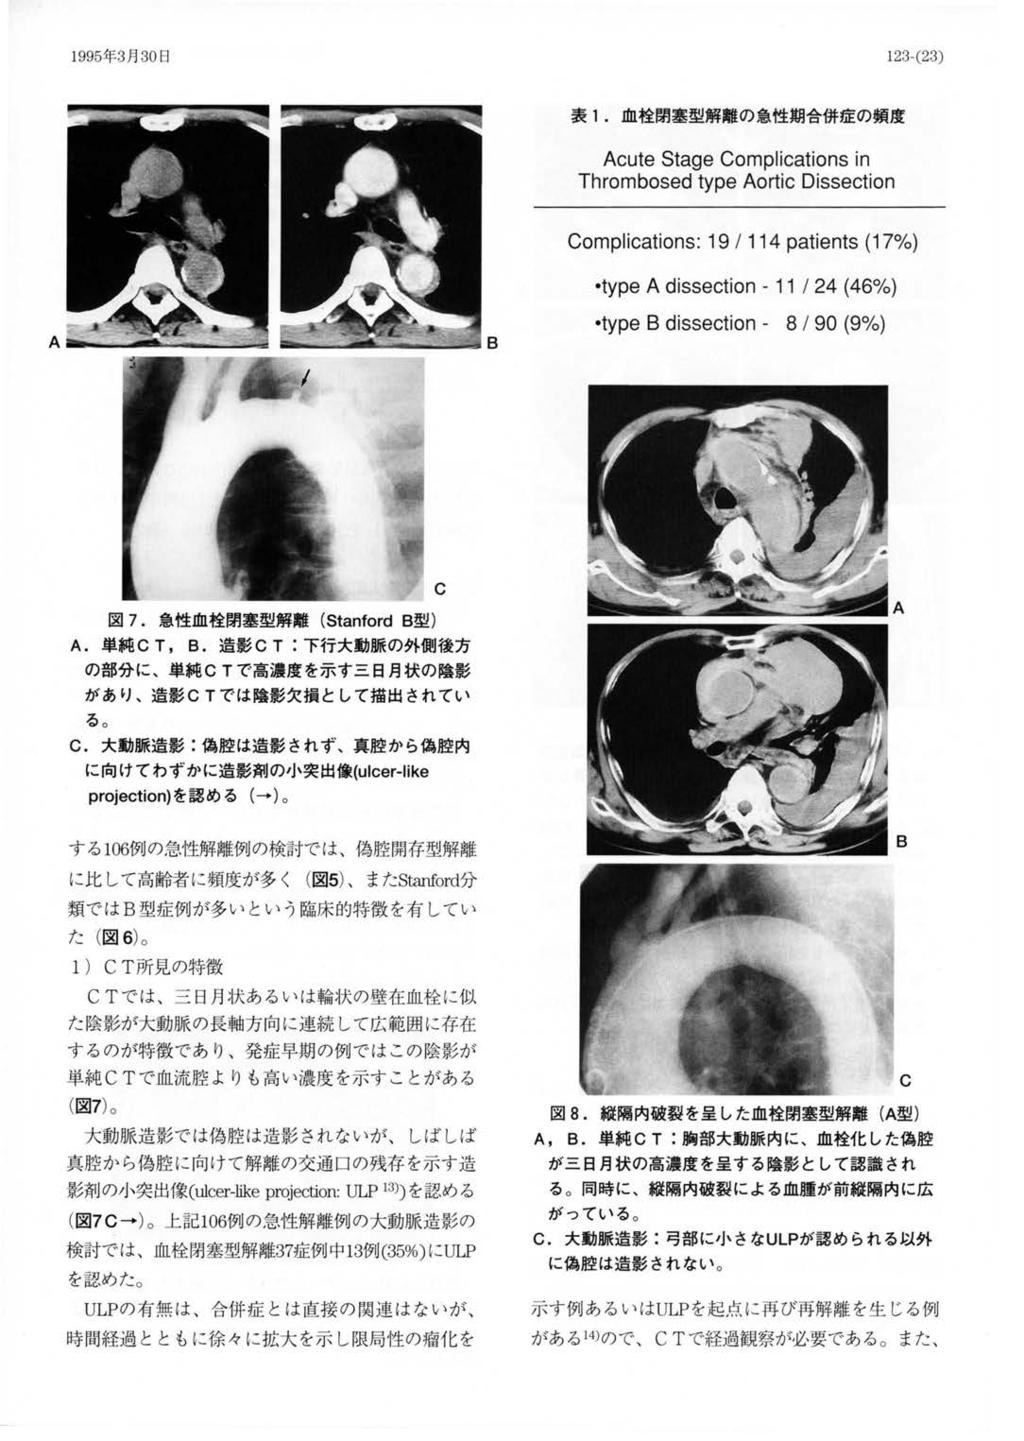 199 5 年 3 月 30 日 表 1. 血栓閉塞型解離の急性期合併症の頻度 図 7. 急性血栓閉塞型解離 (Star ford B 型 ) A. 単純 C T, B. 造影 CT: 下行大動脈の外側後方 の部分に 単純 CT で高濃度を示す三日月状の陰影 があり る 造影 CT では陰影欠損として描出されてい C.